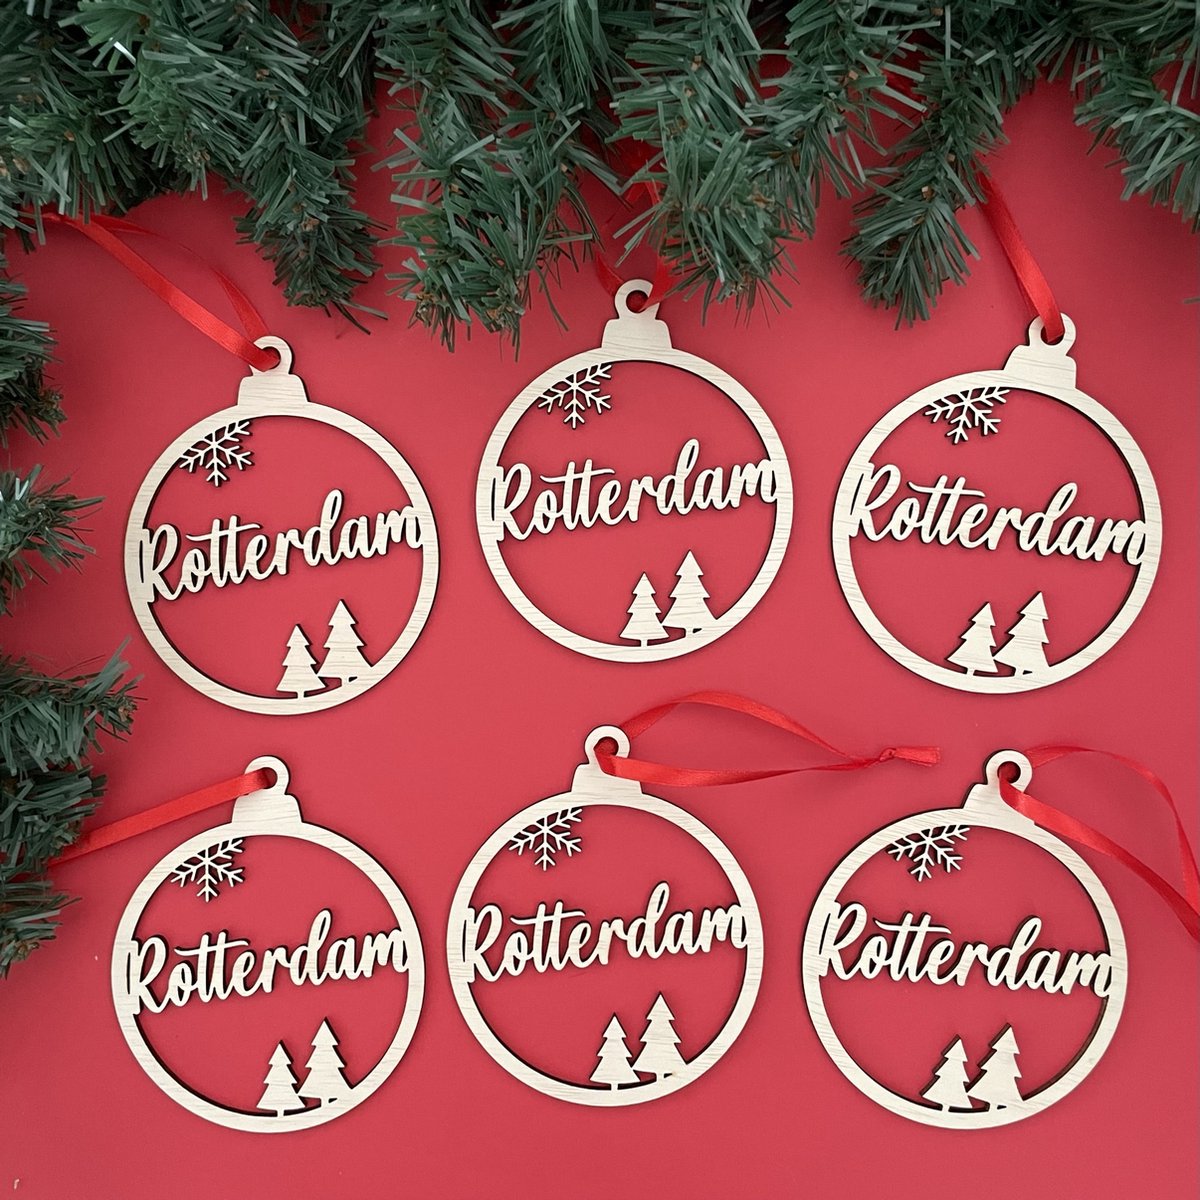 Houten Kersthangers Set Rotterdam 6 Stuks - Kerst - Kerstbal - Hout - Kerstboom - Houten Decoratie - Kerstmis - Kerstdecoratie - Kerst ornament – Versiering